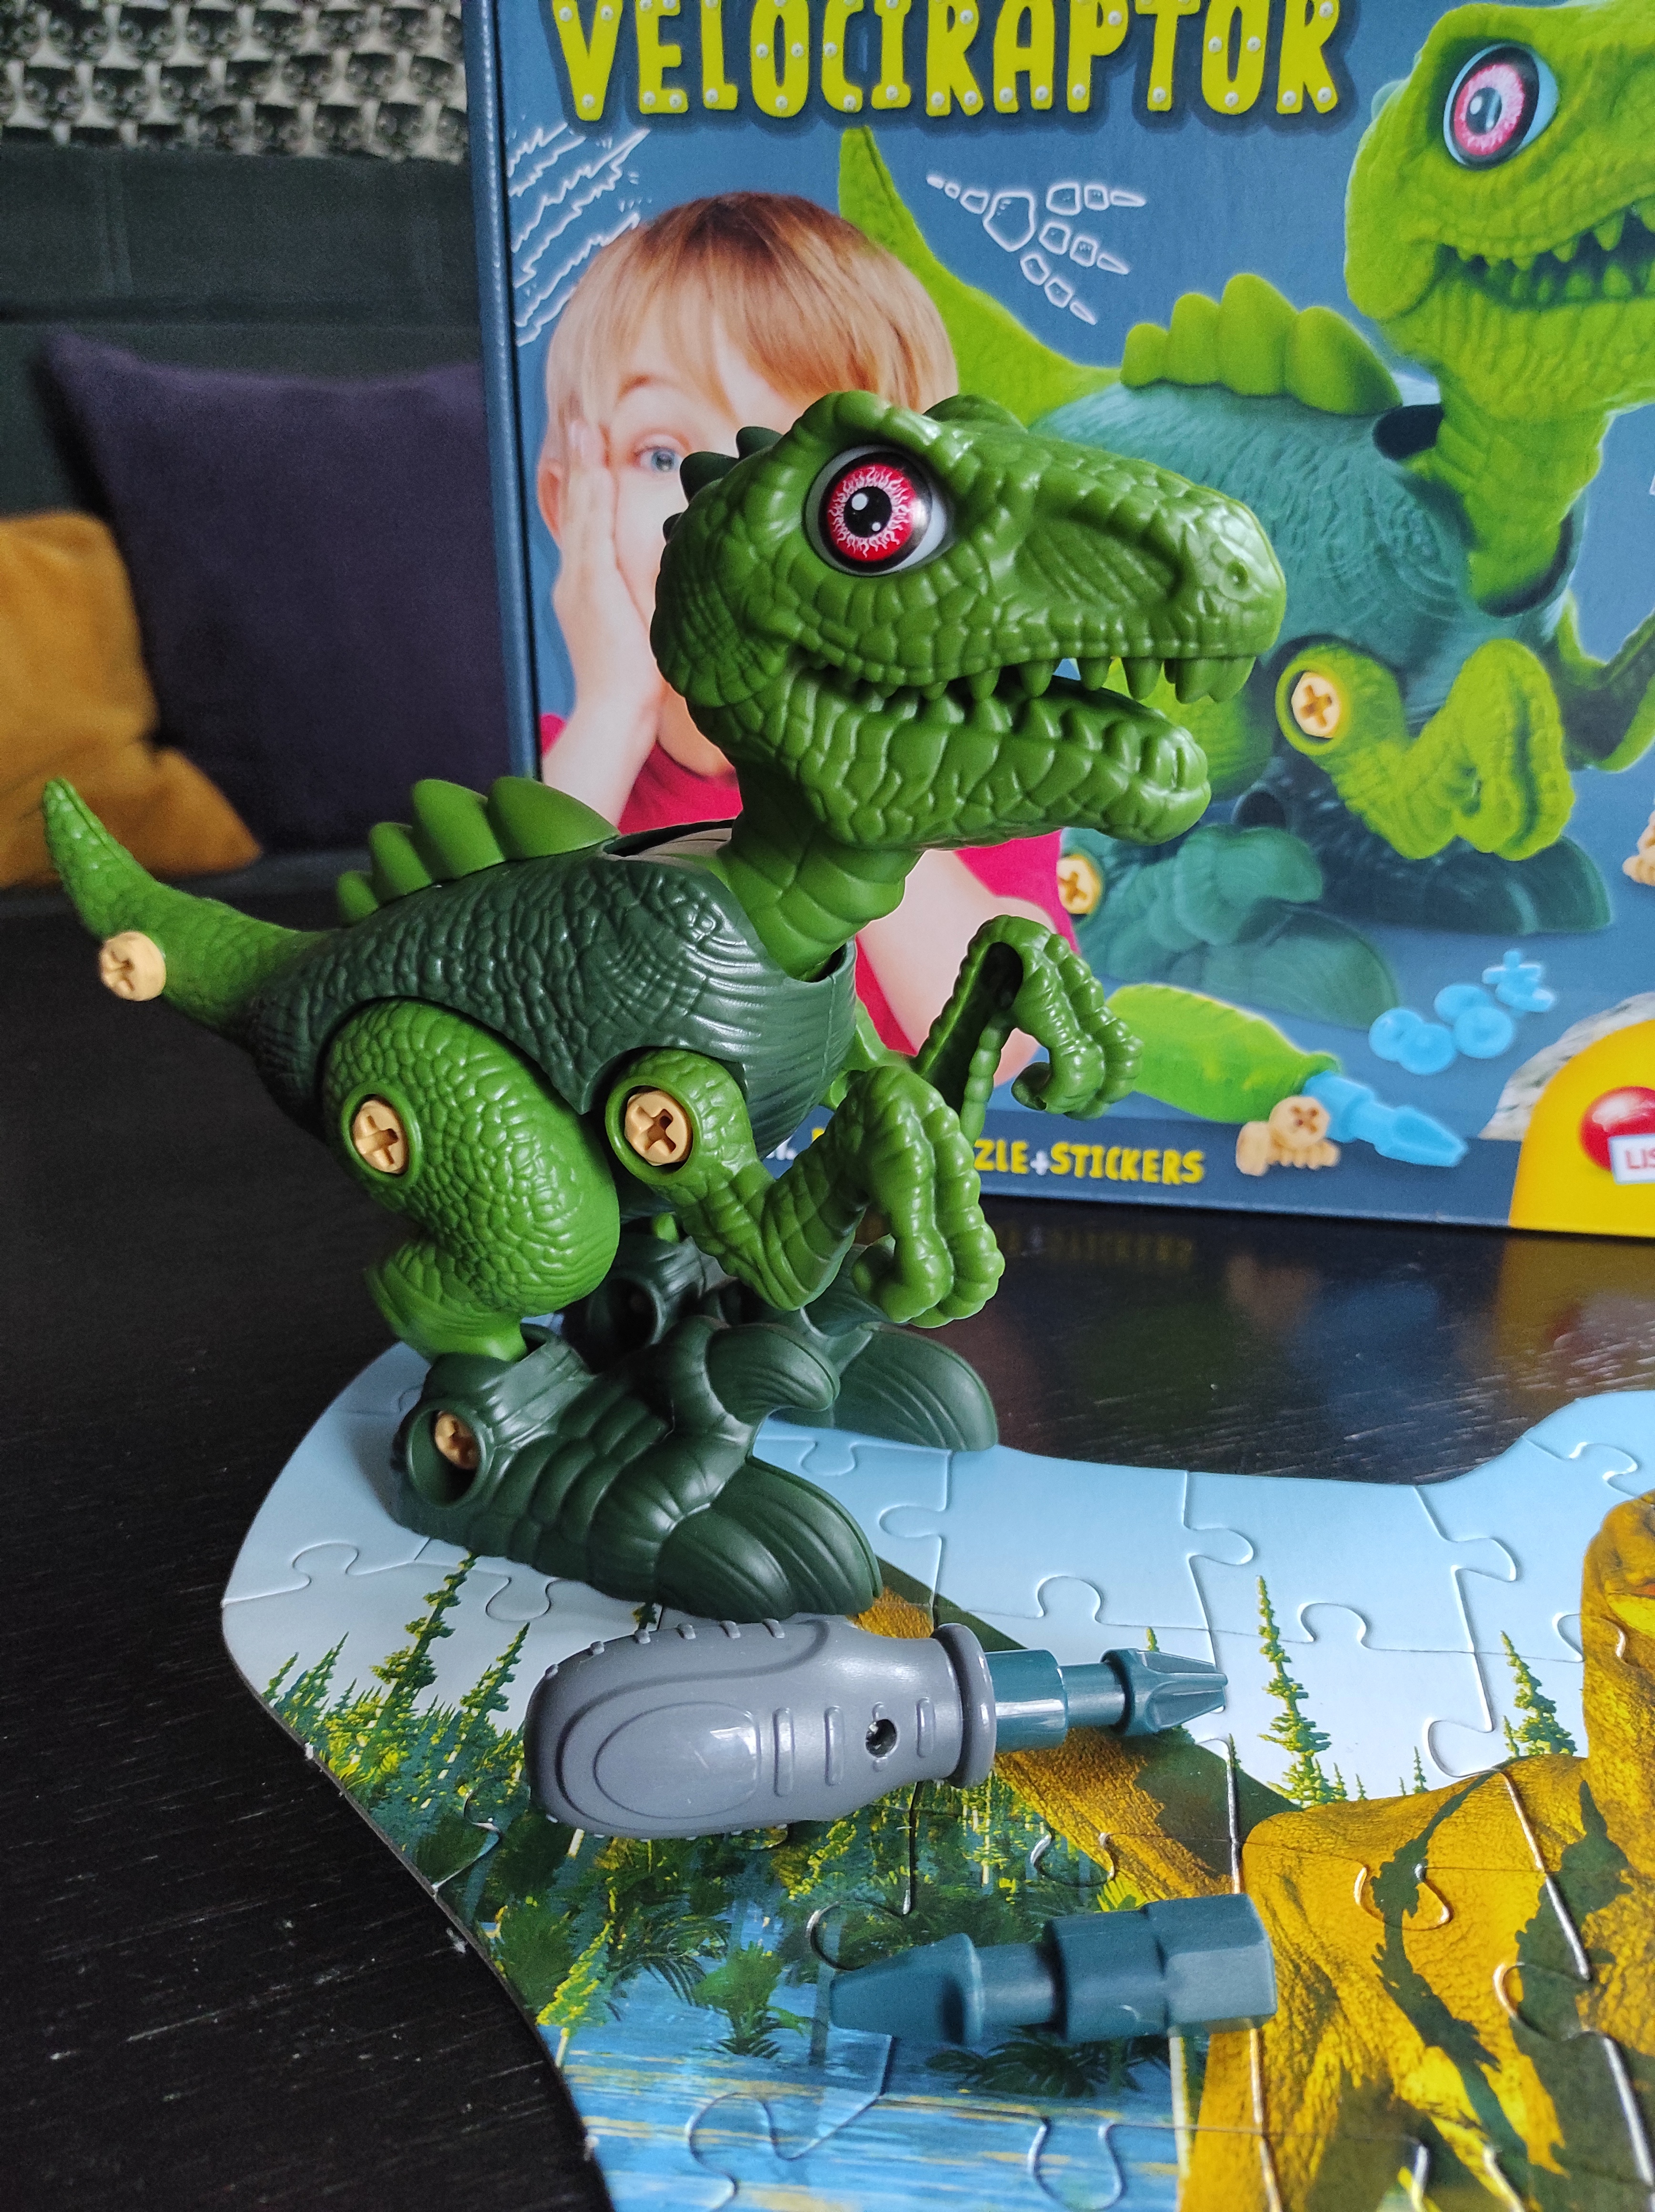 Liściani Dino Stem Velociraptor - zabawki Dante